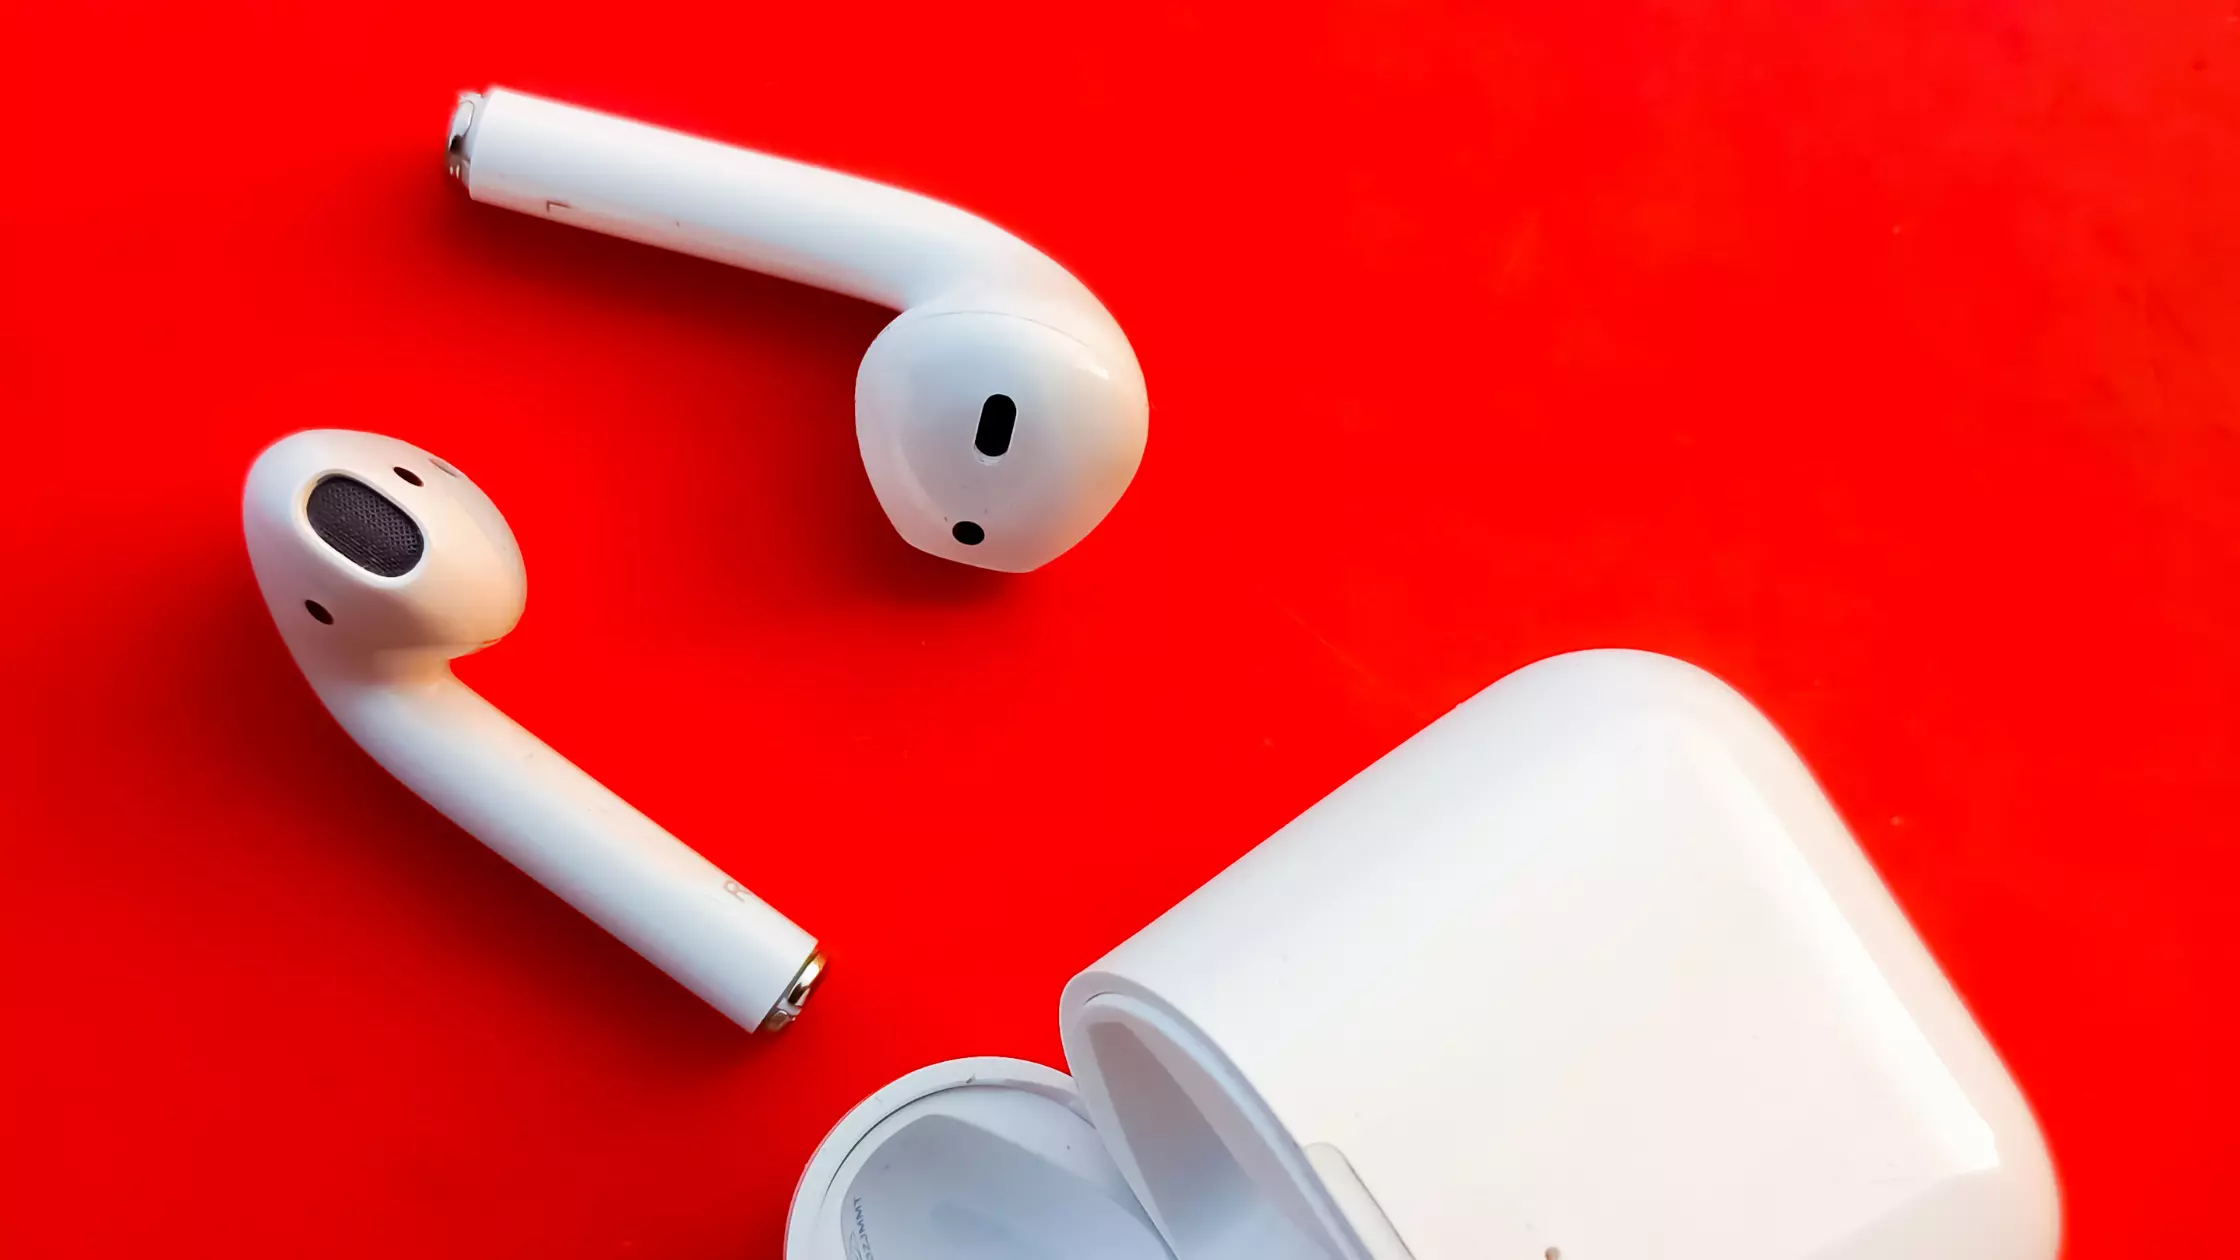 Should we ditch the wireless earphones?